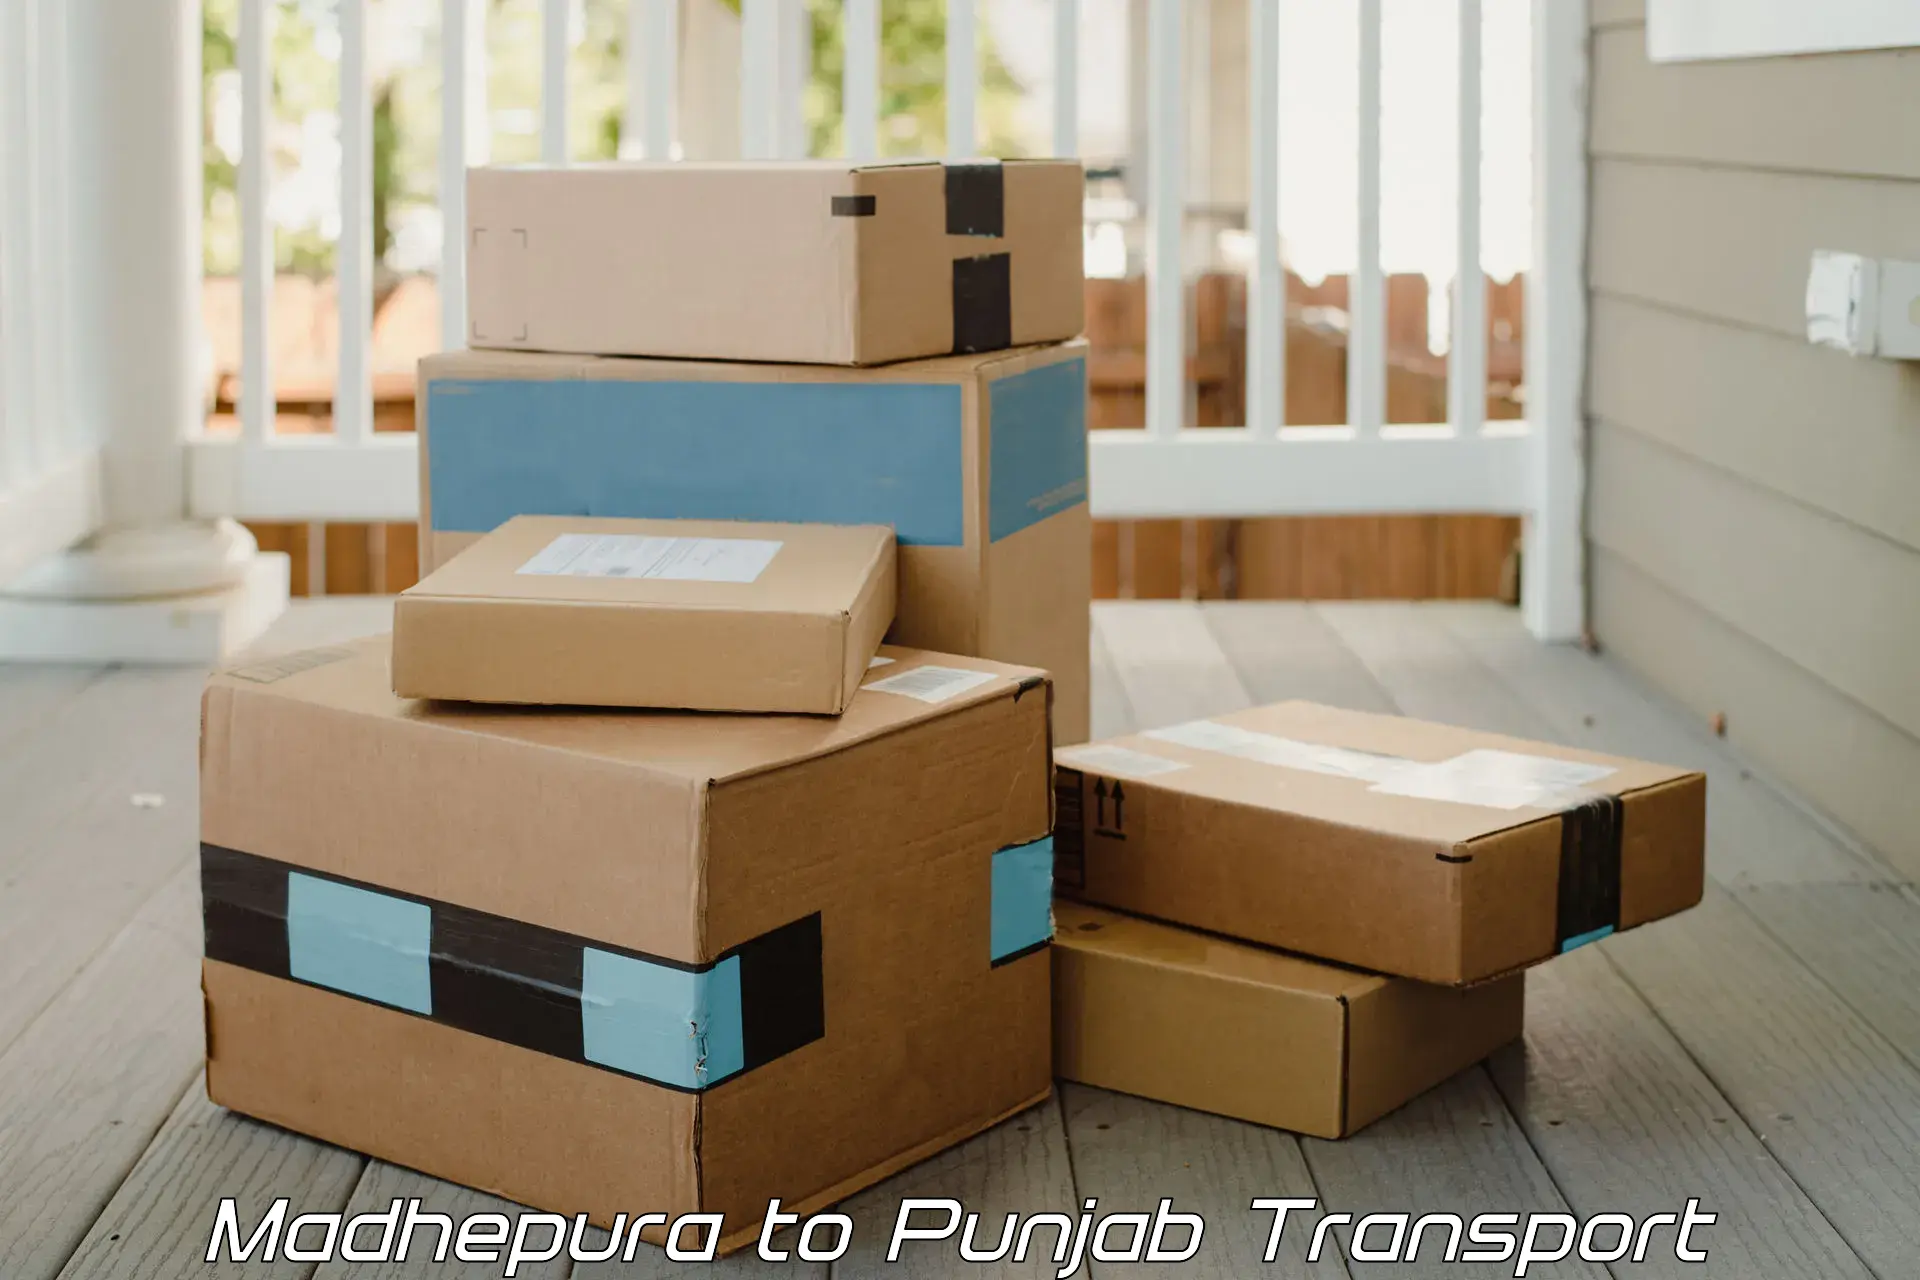 Express transport services Madhepura to Punjab